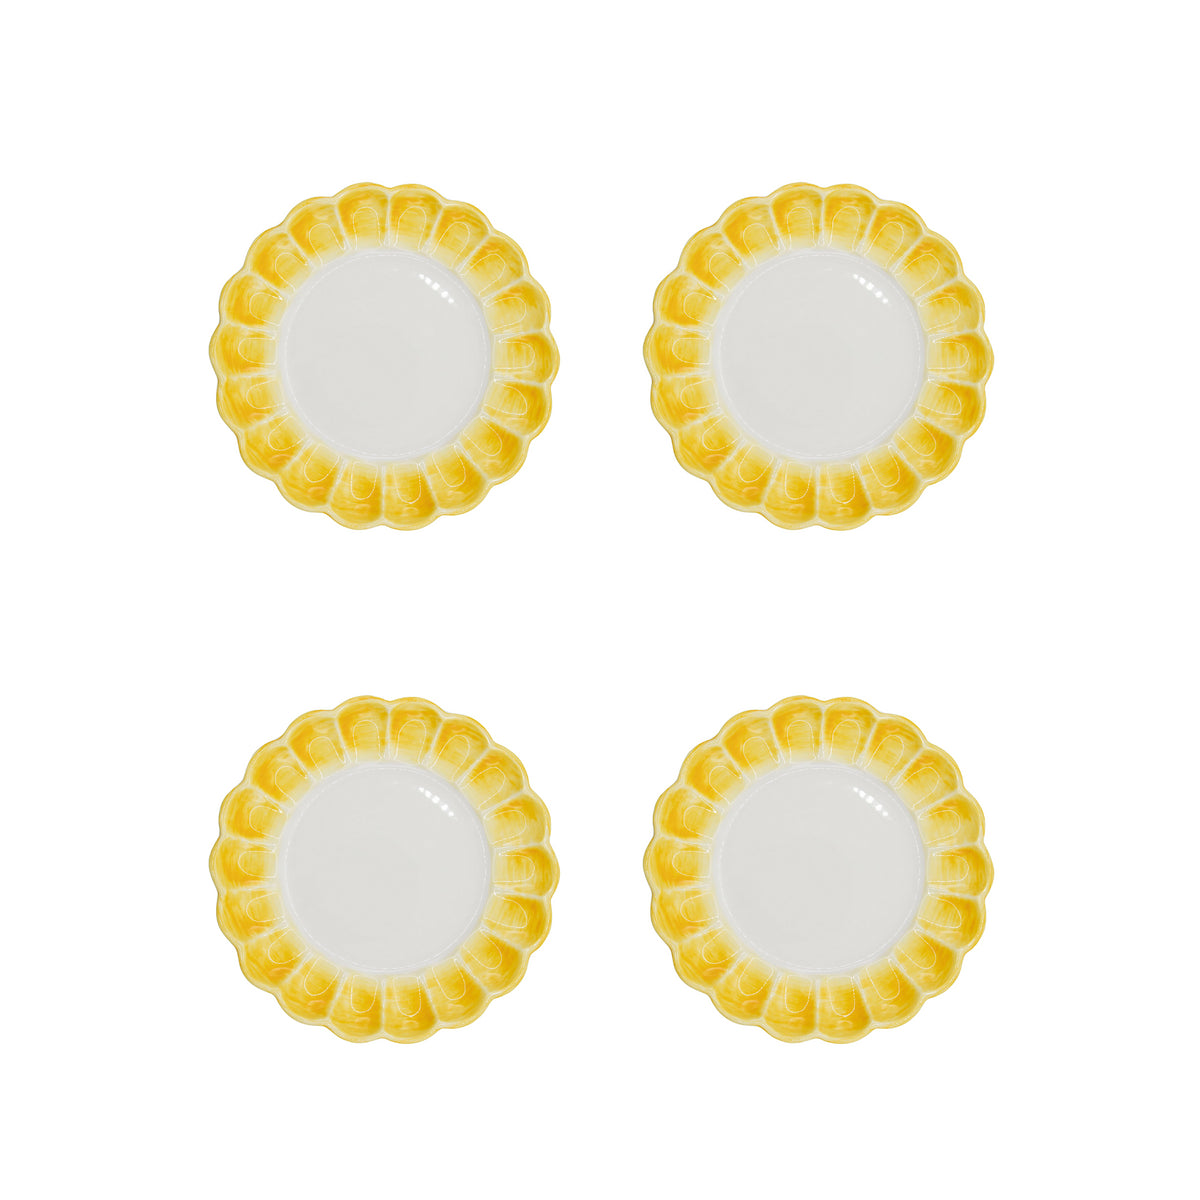 Lido Side Plate, Yellow, Set of 4 - Skye McAlpine Tavola